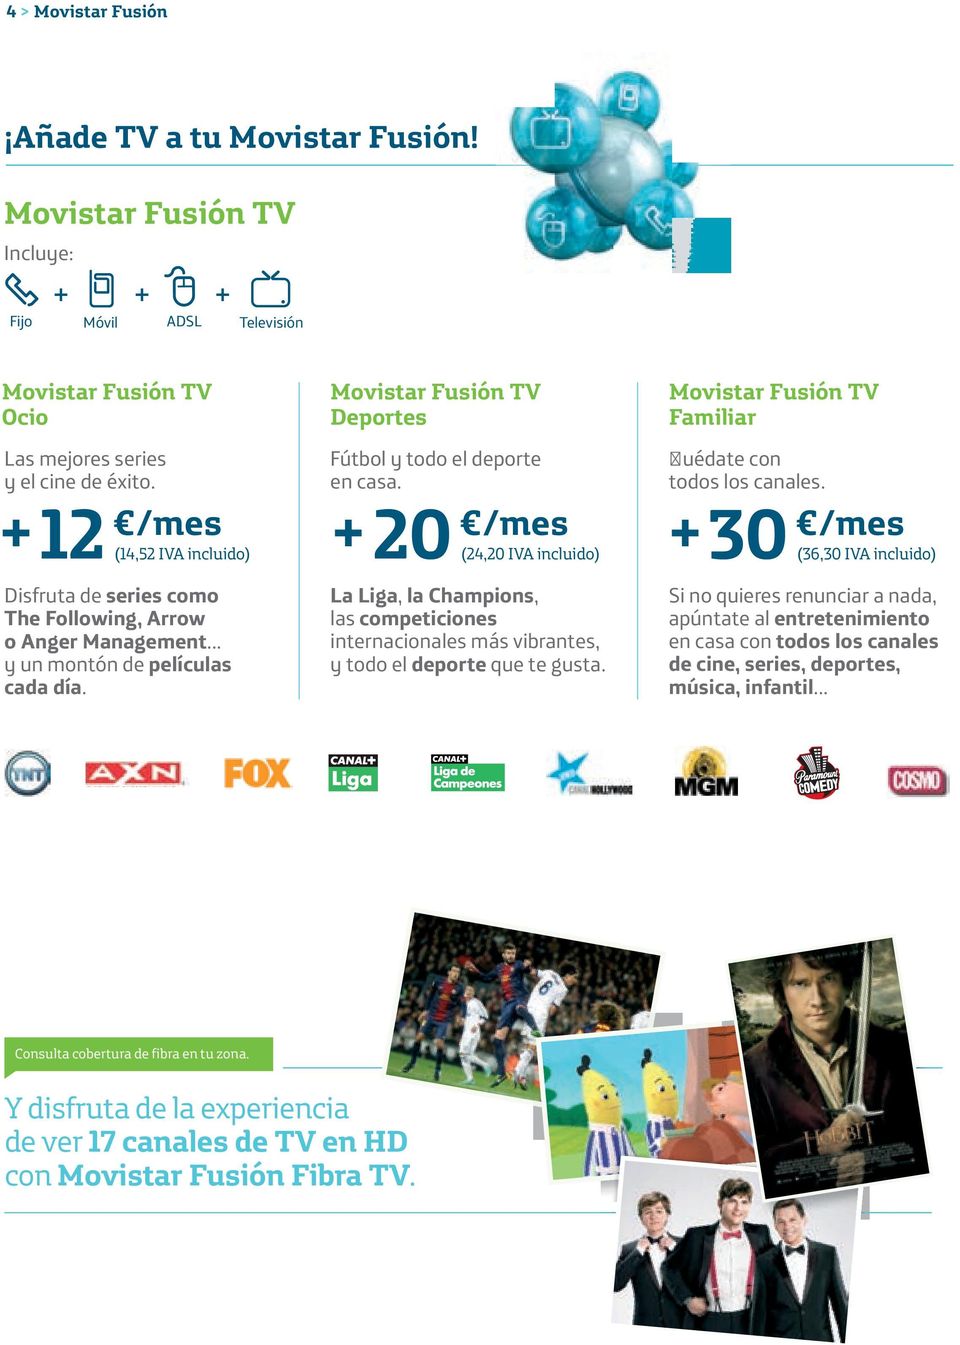 /mes (24,20 IVA incluido) +30 La Liga, la Champions, las competiciones internacionales más vibrantes, y todo el deporte que te gusta. Movistar Fusión TV Familiar uédate con todos los canales.